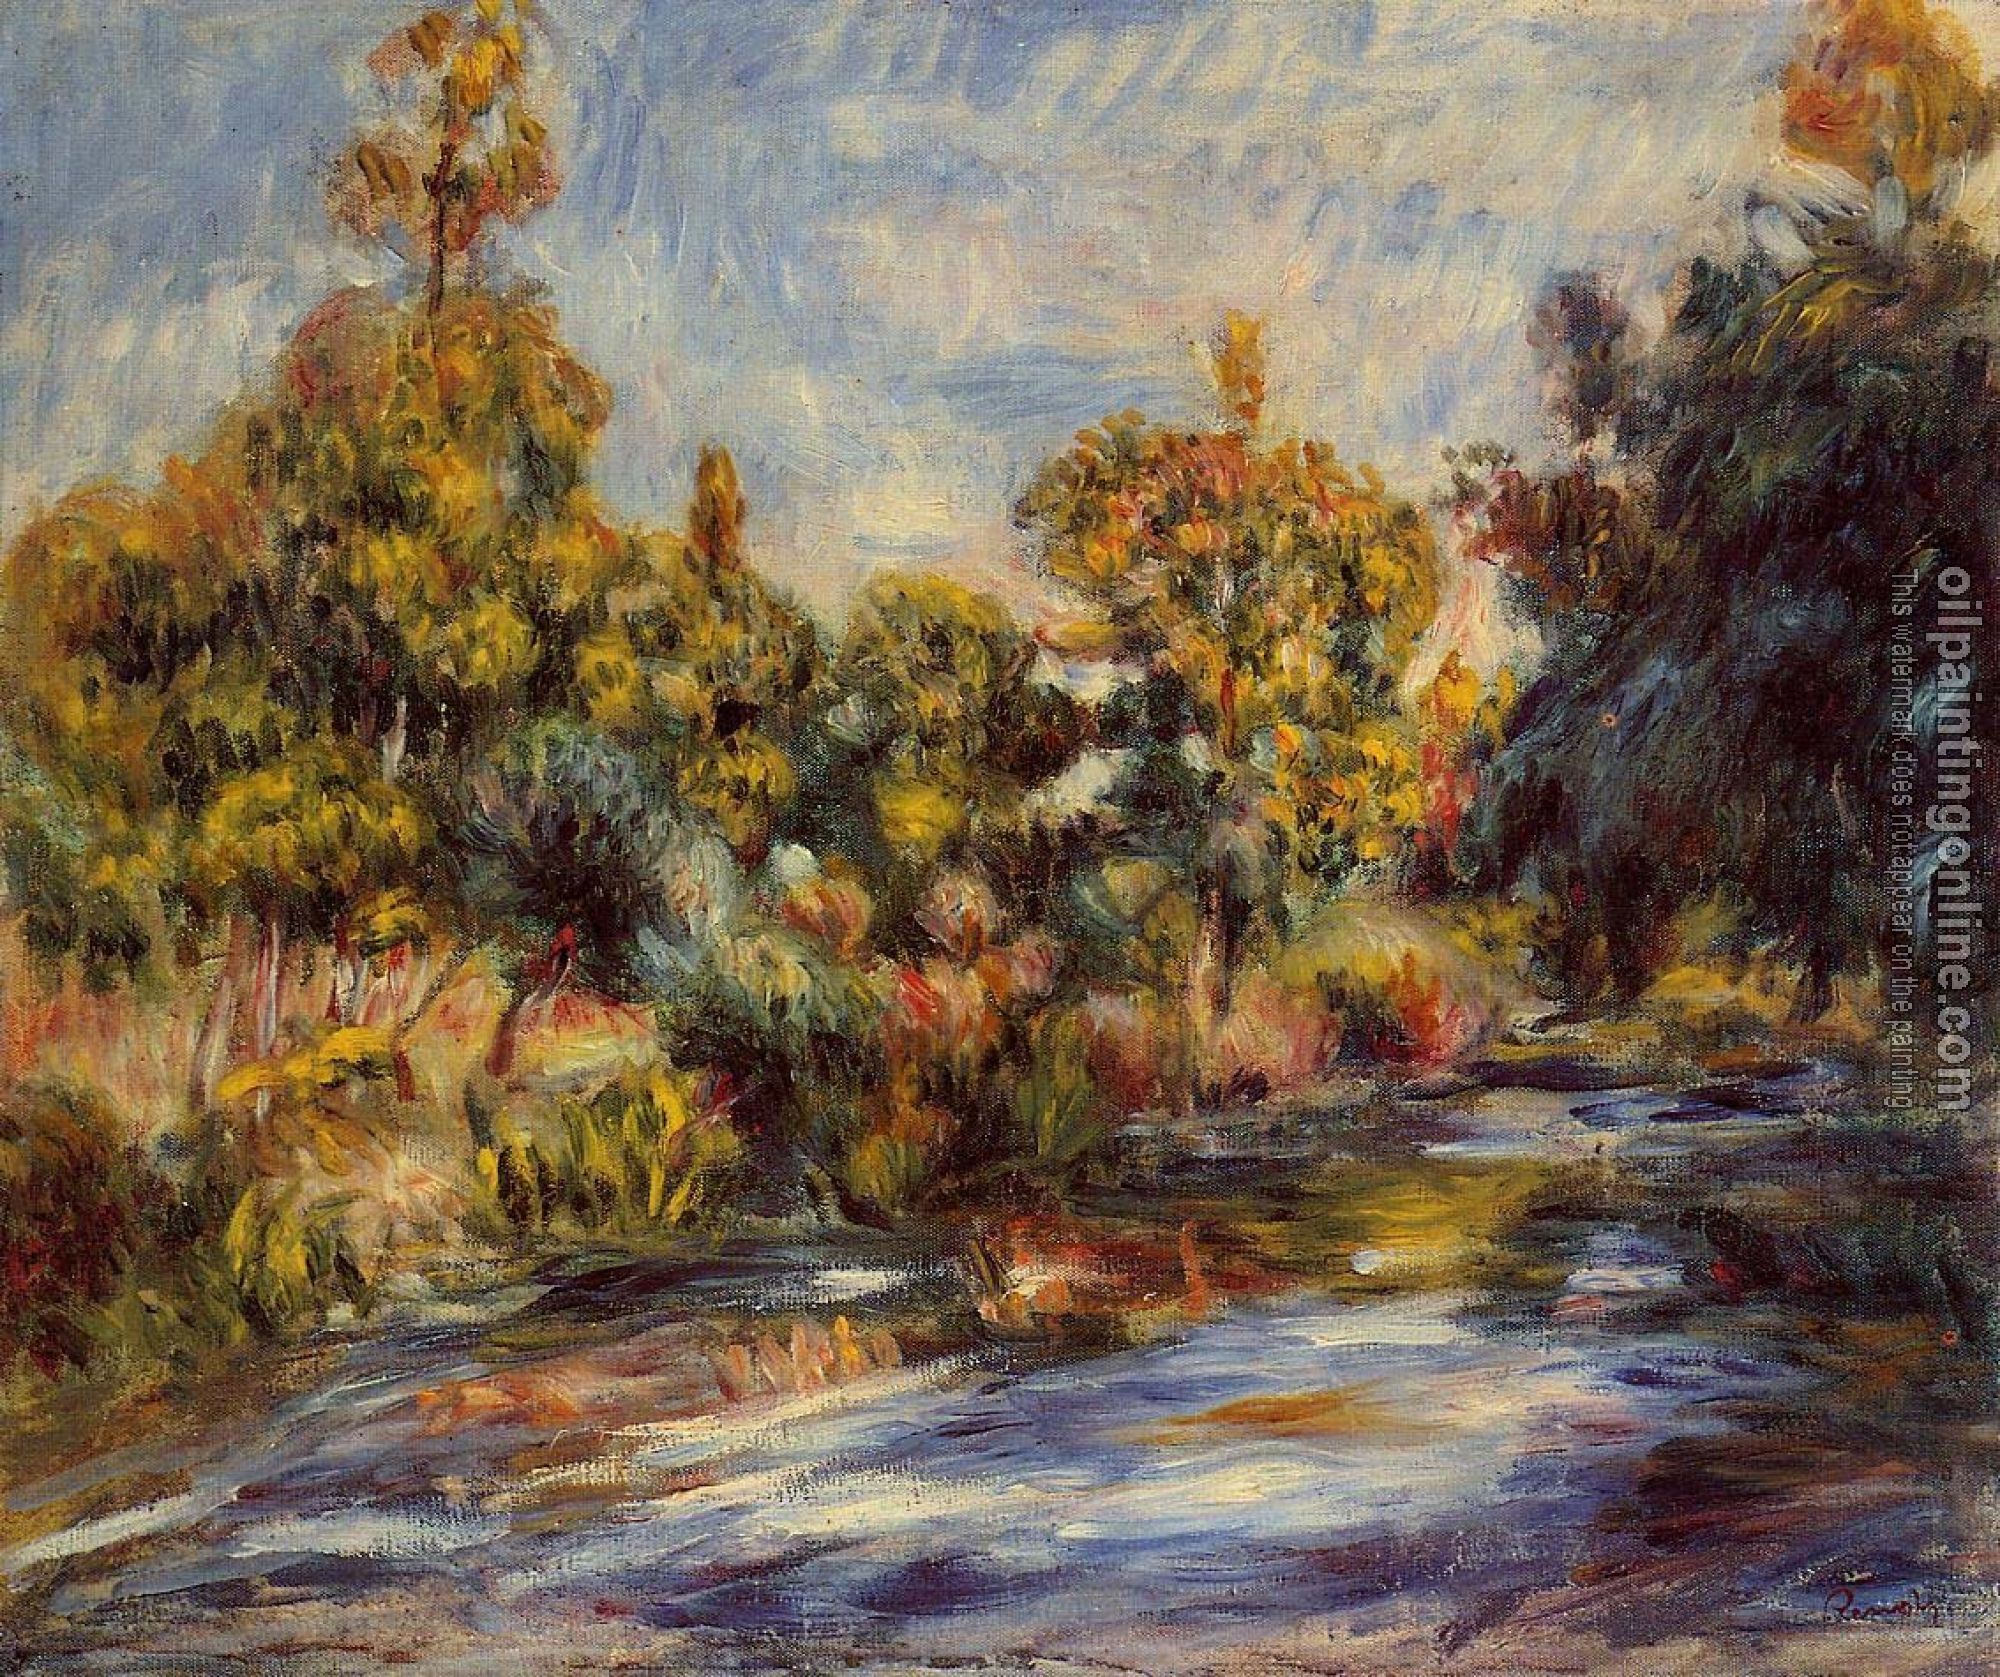 Renoir, Pierre Auguste - Landscape with River